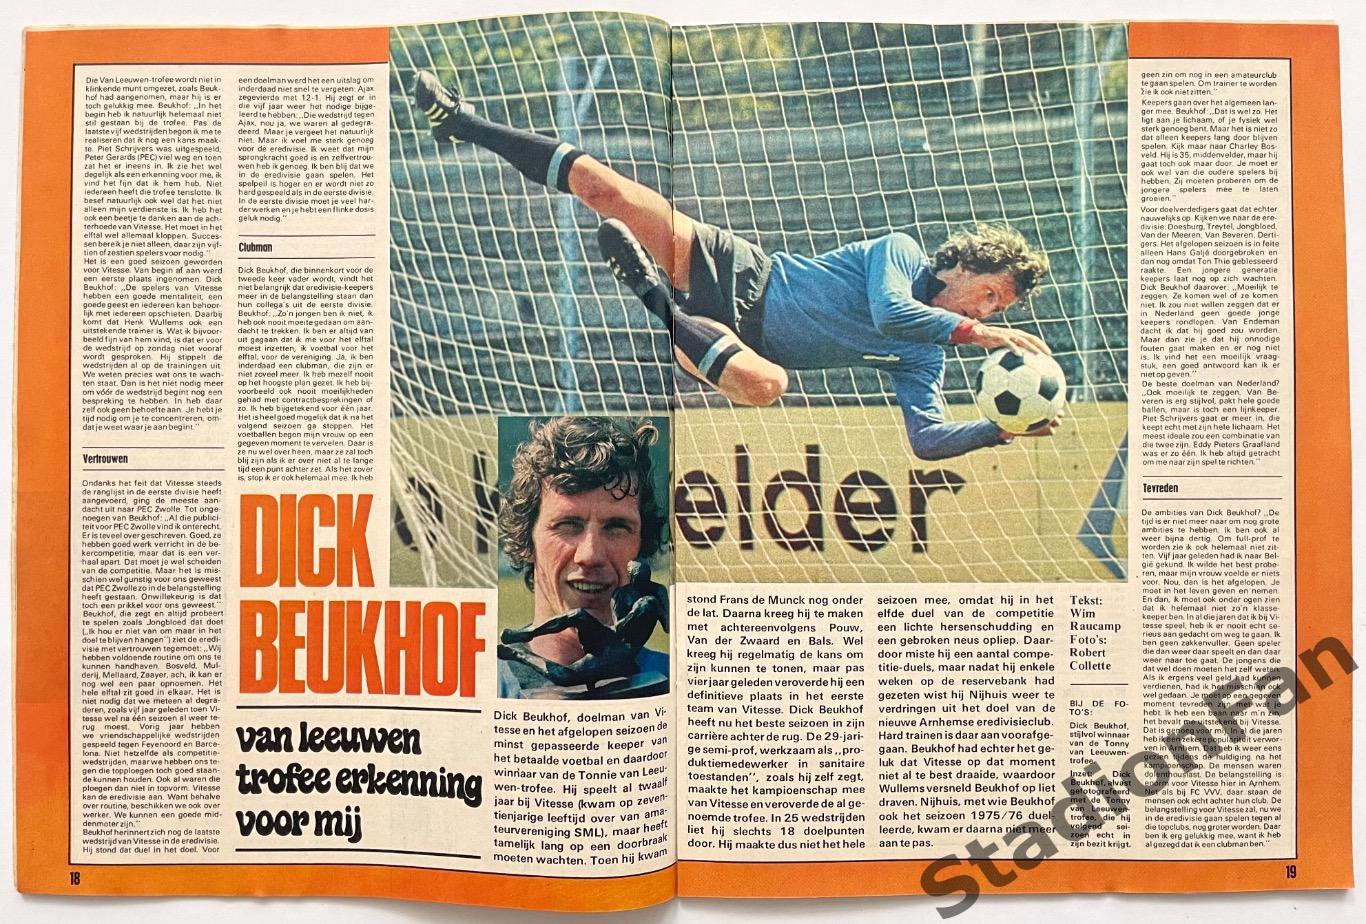 Журнал Voetbal nr.25 - 1977 год. 1